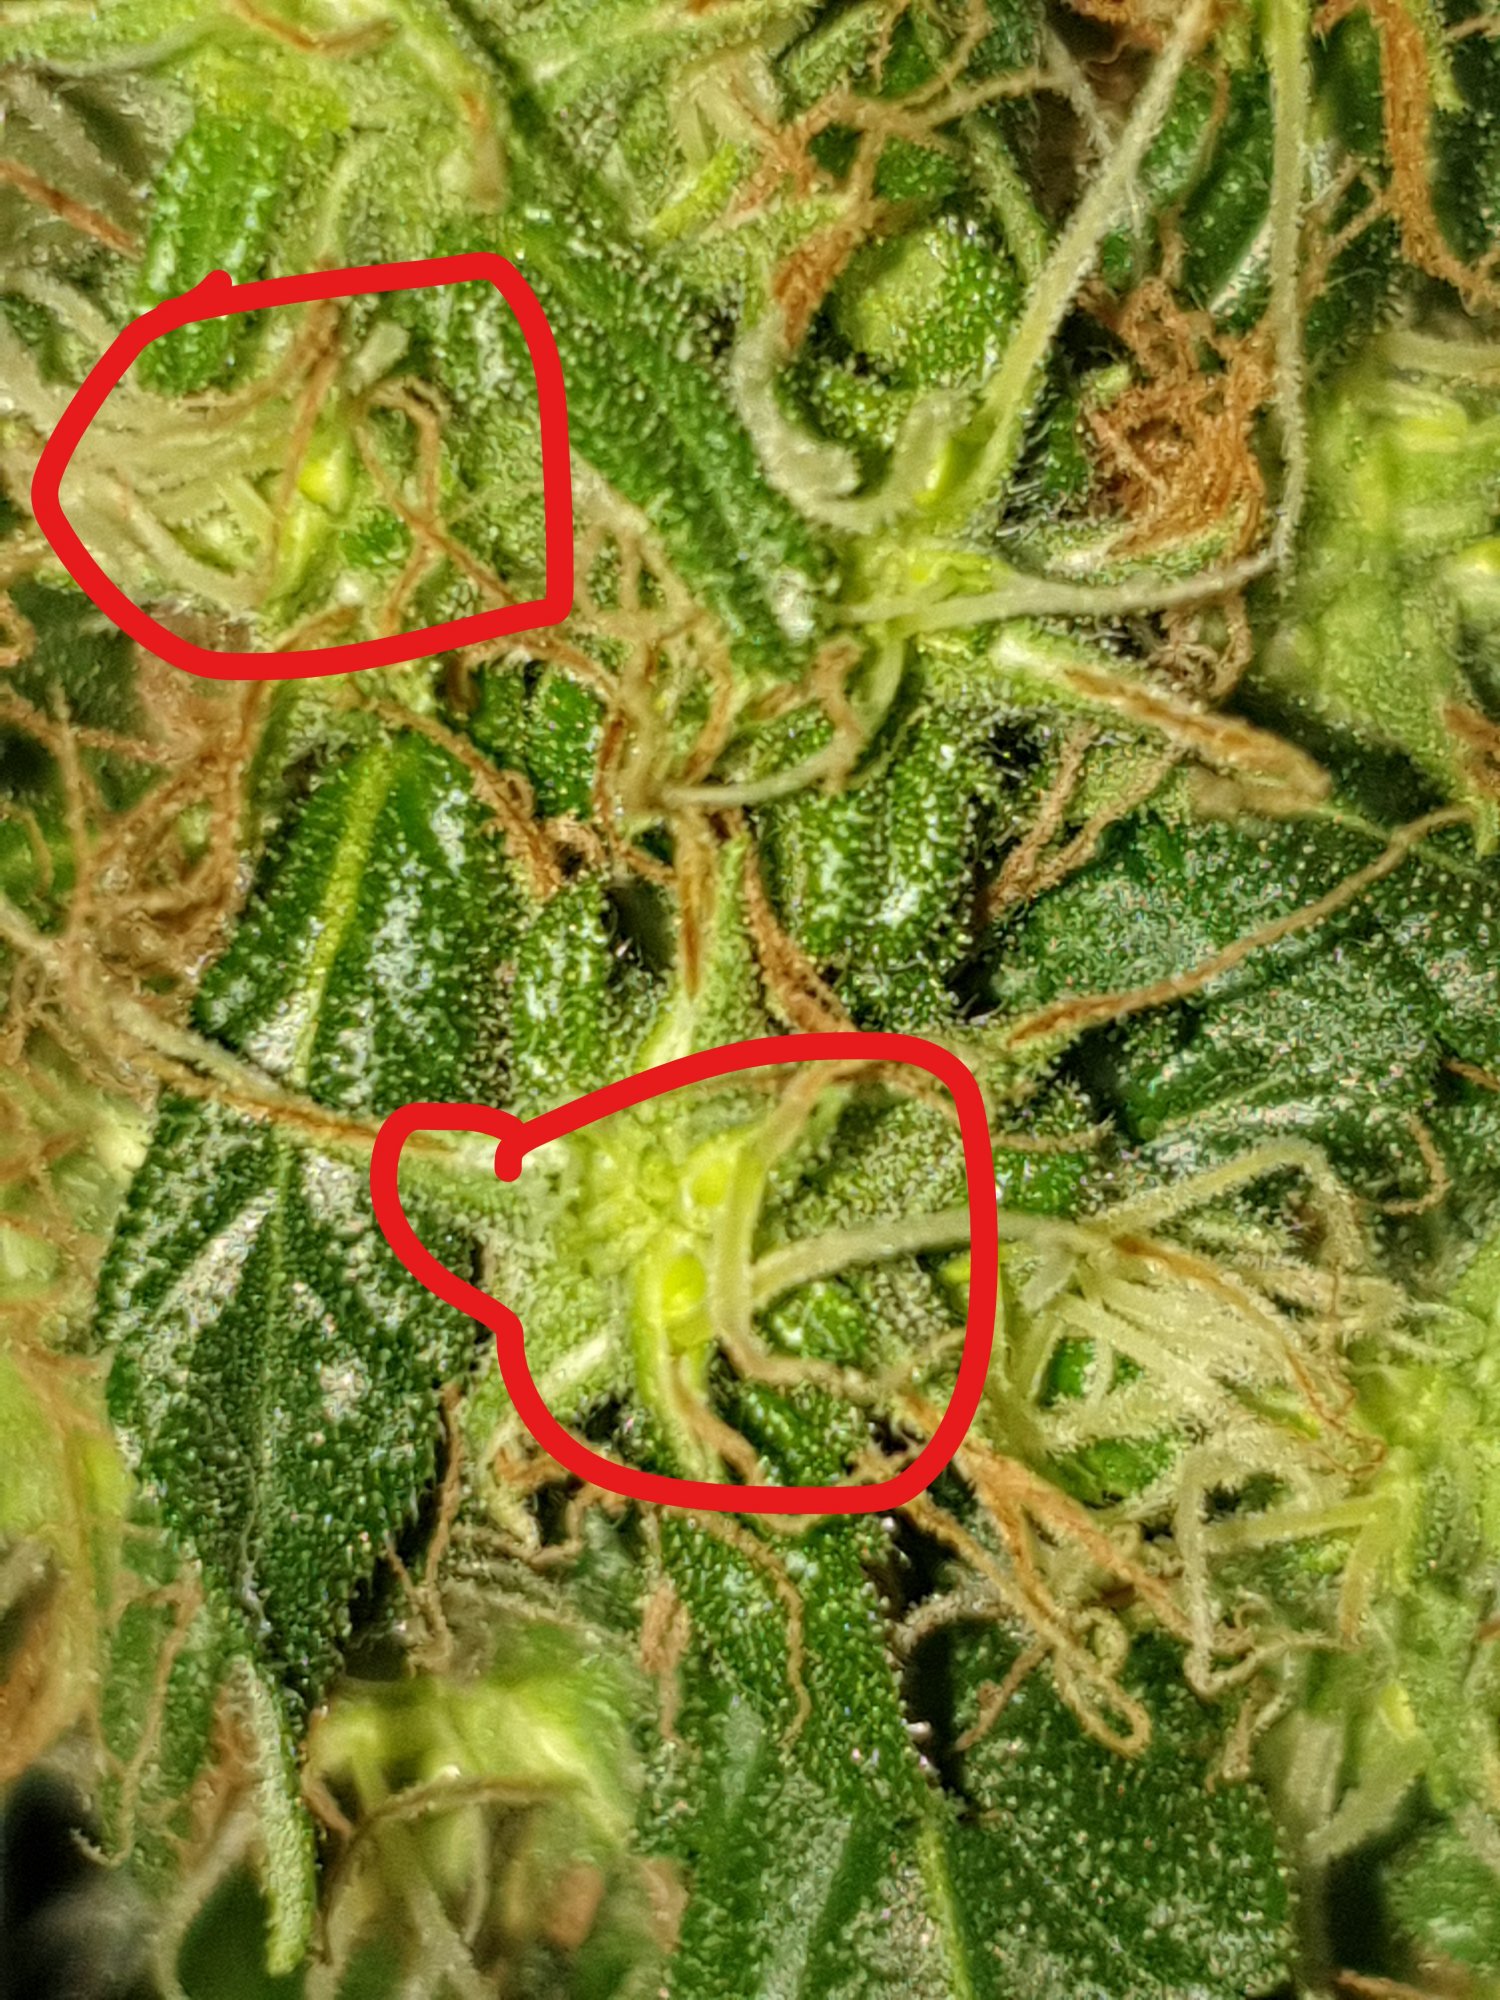 Seeds sighting in my 10weeks buds 2